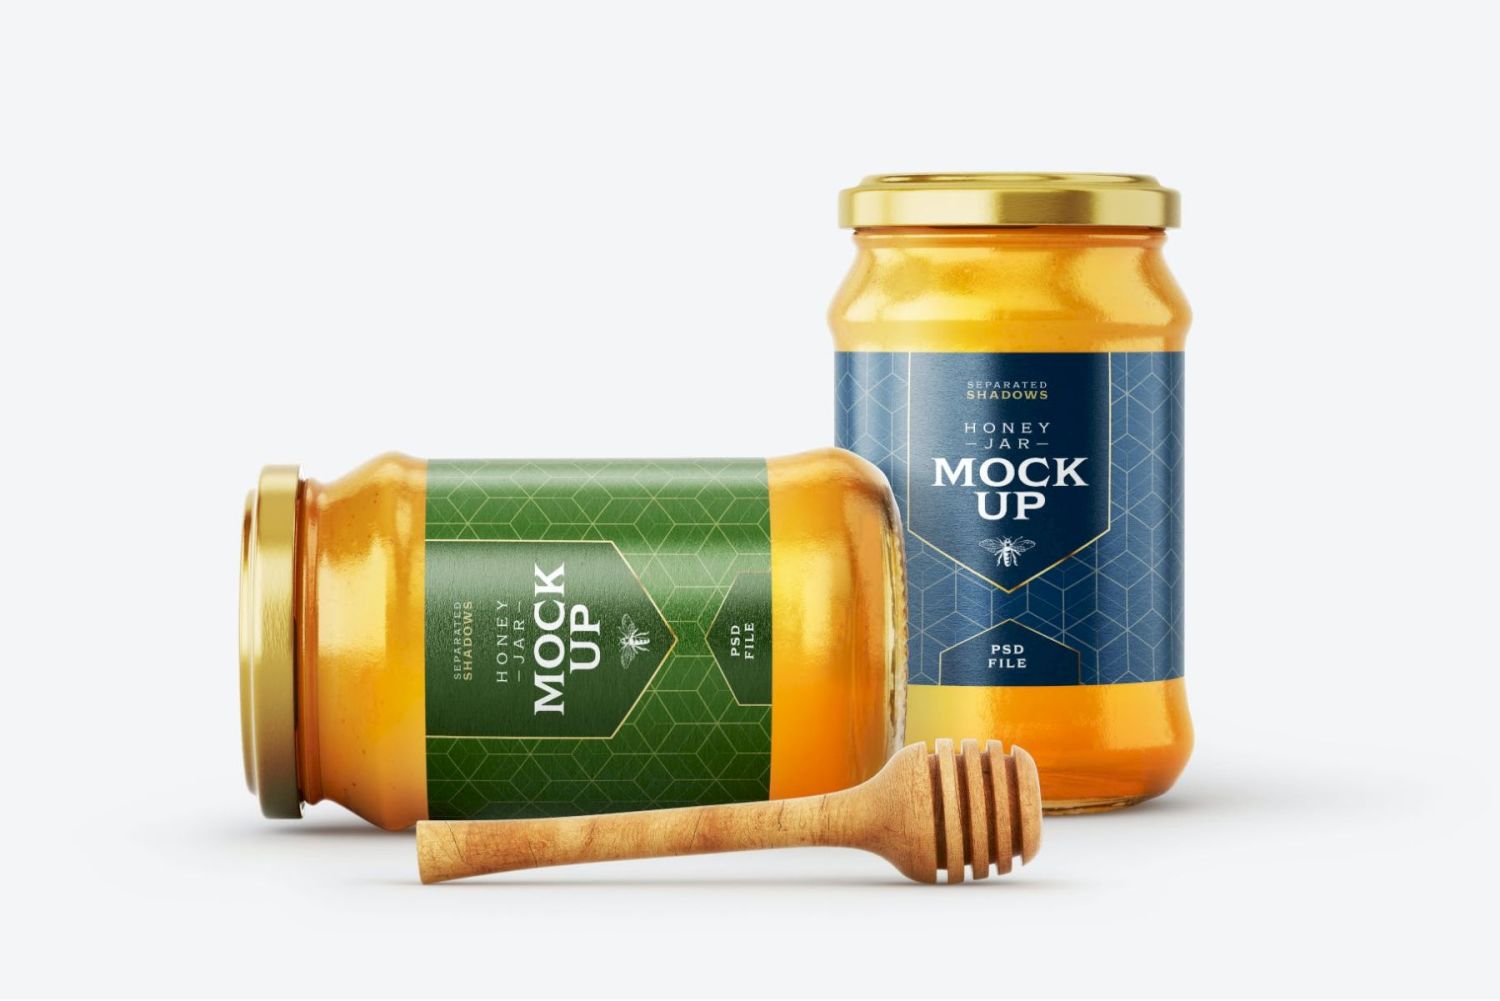 带北斗的蜂蜜罐样机套装 Honey Jar Mockup Set With Dipper插图7